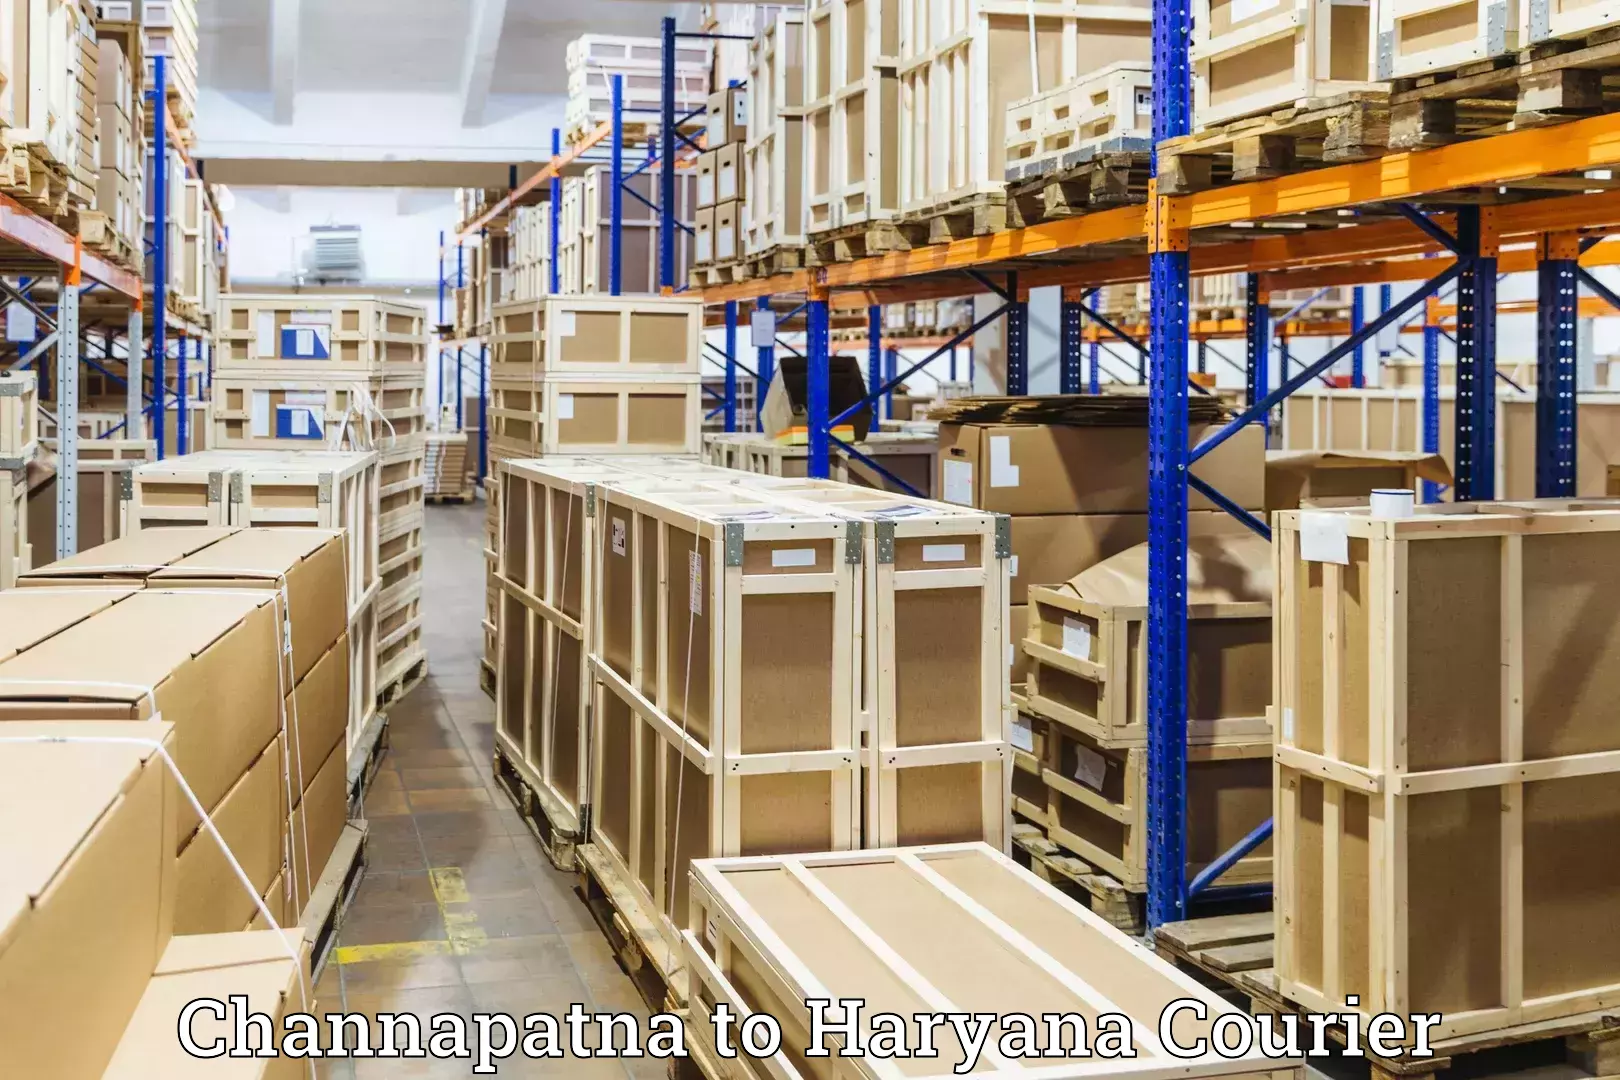 Baggage shipping experts Channapatna to Ambala